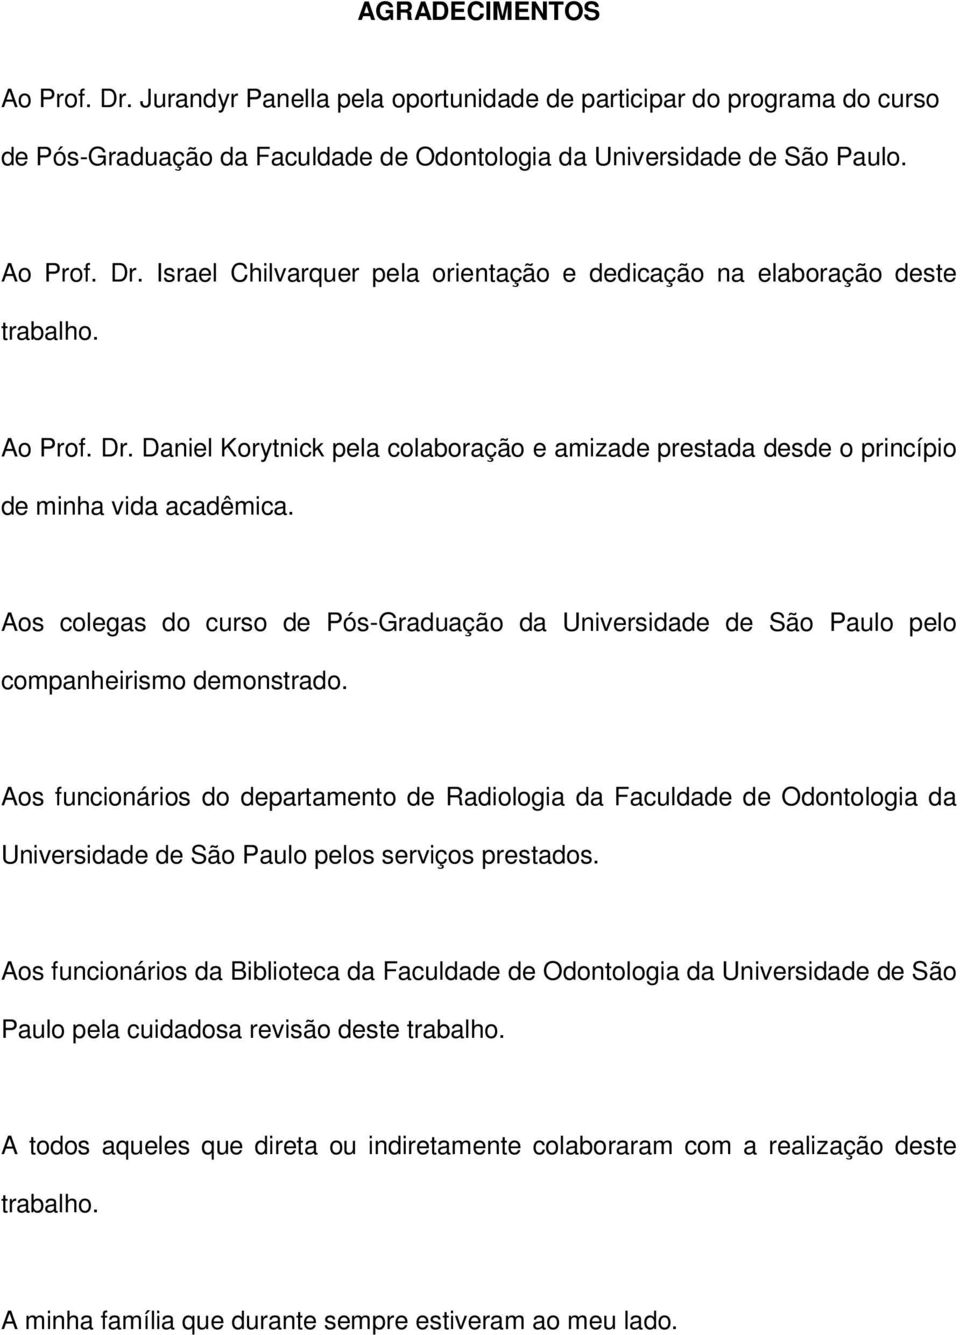 Aos colegas do curso de Pós-Graduação da Universidade de São Paulo pelo companheirismo demonstrado.